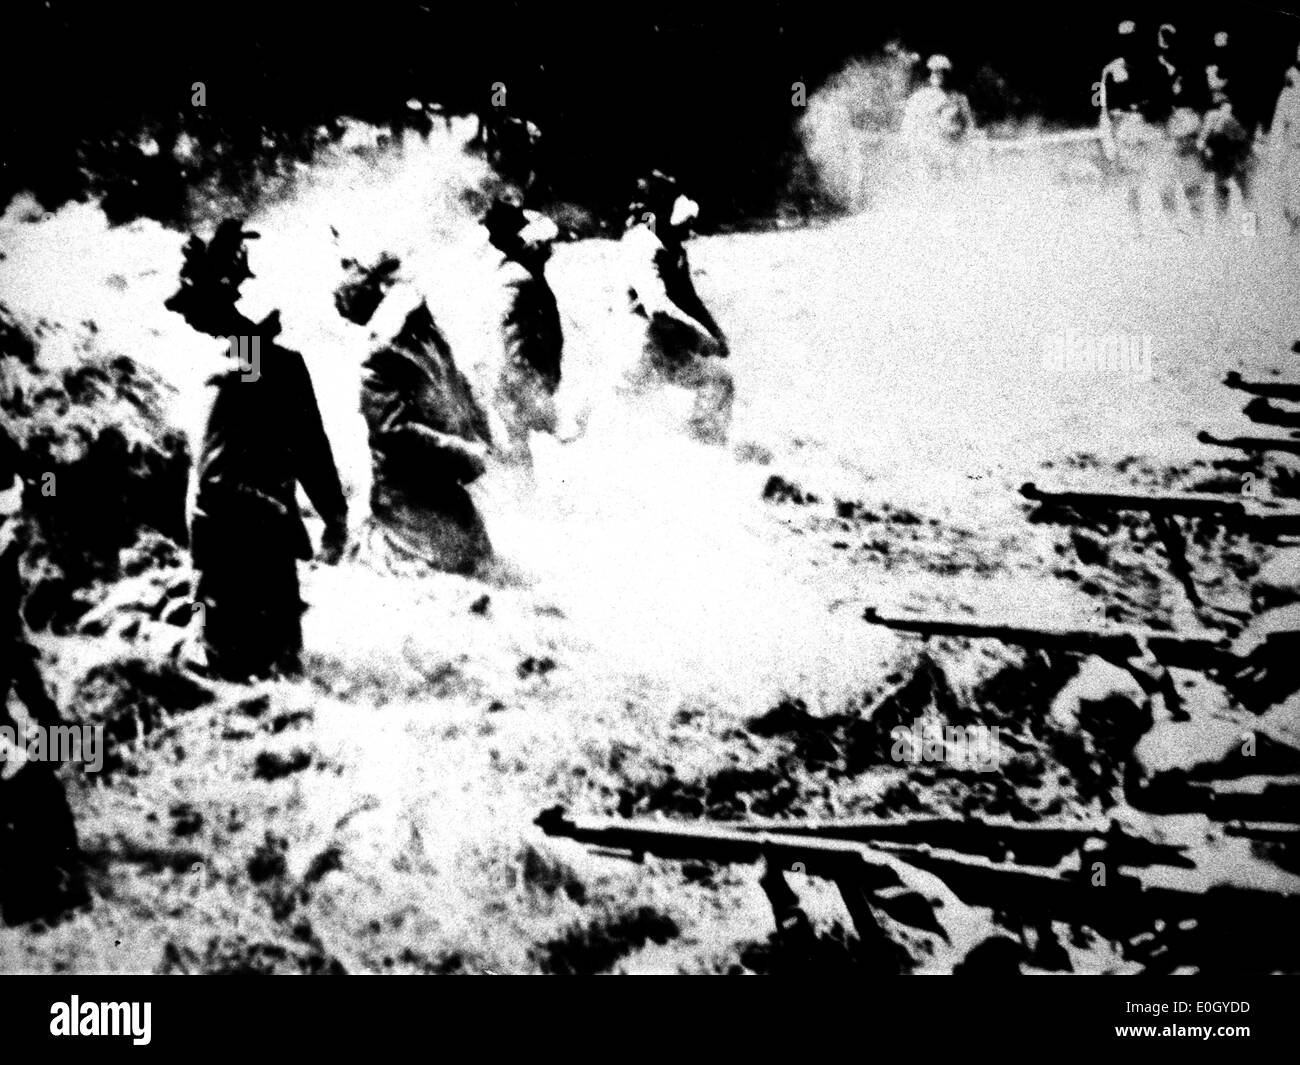 Ejecución de prisioneros en Polonia por los Nazis durante la segunda guerra mundial Foto de stock